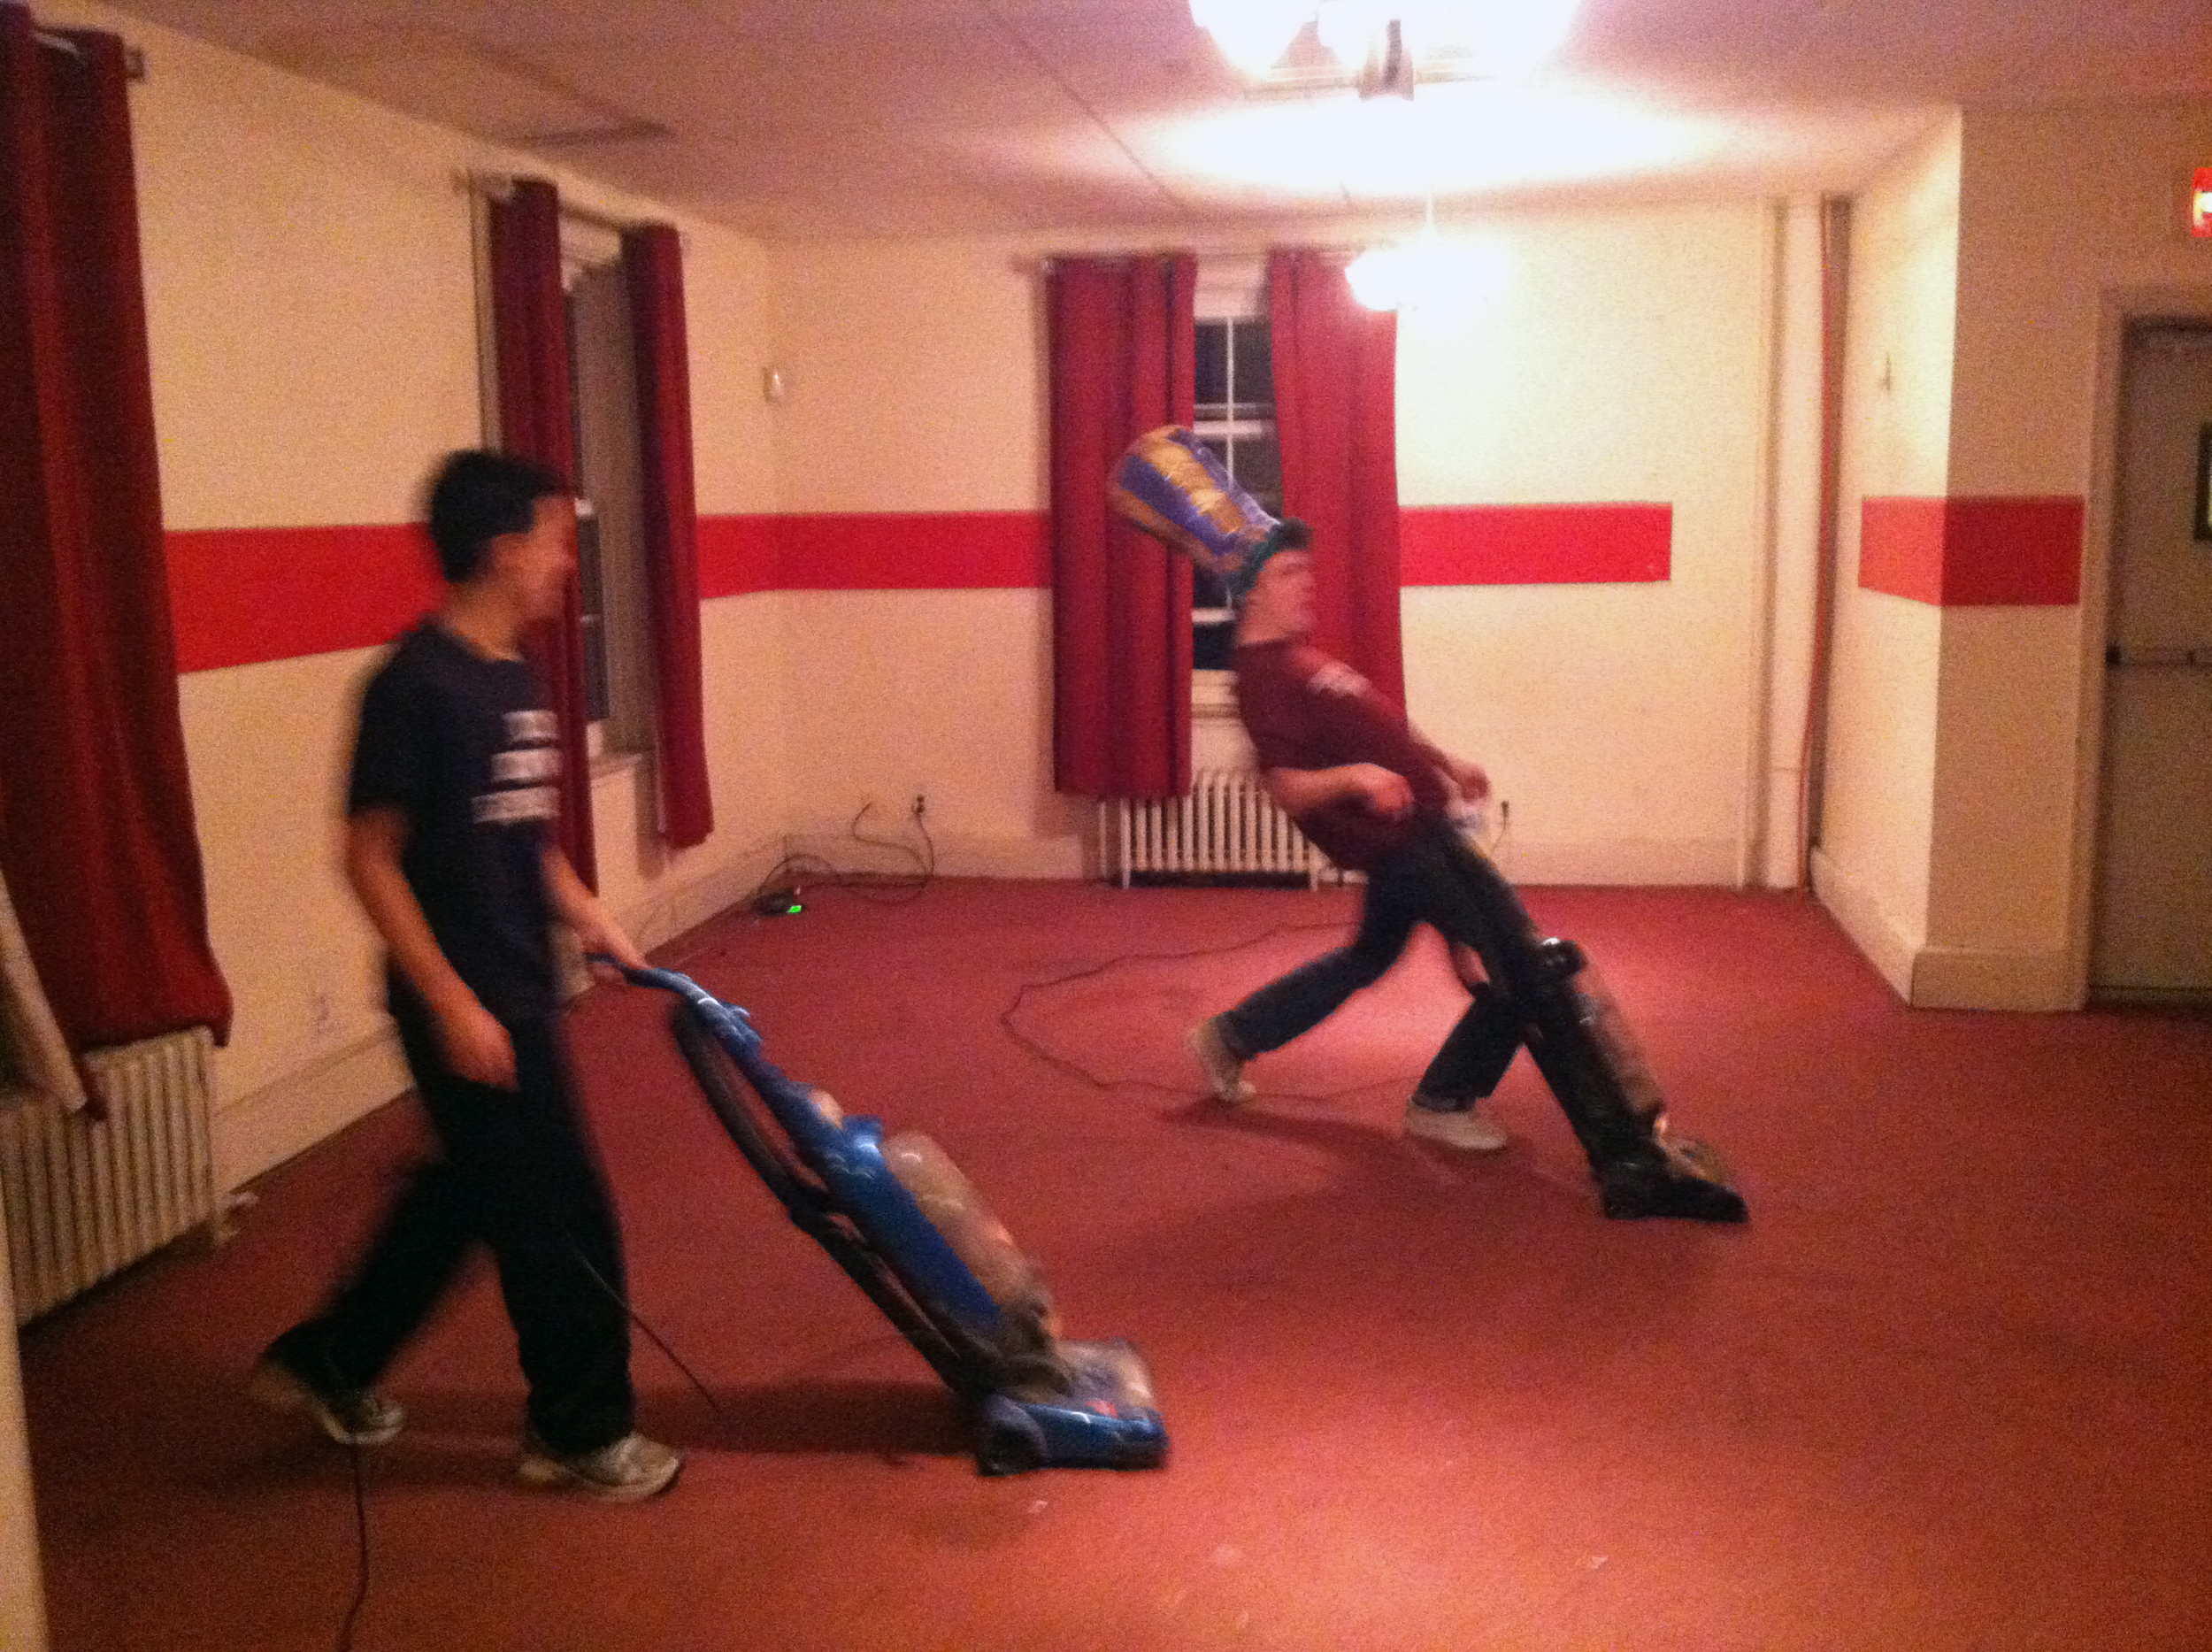  2013 Alumni Work Weekend - Pool Room Project Matt Liu (L) and Zach Kramer vacuum the New Carpet 